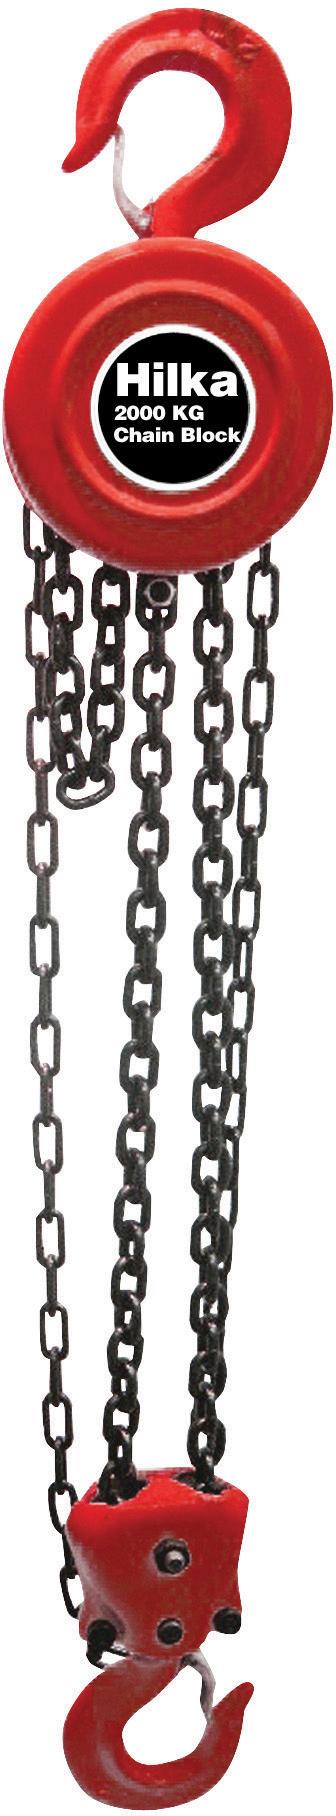 Hilka 2000Kg Chain Block